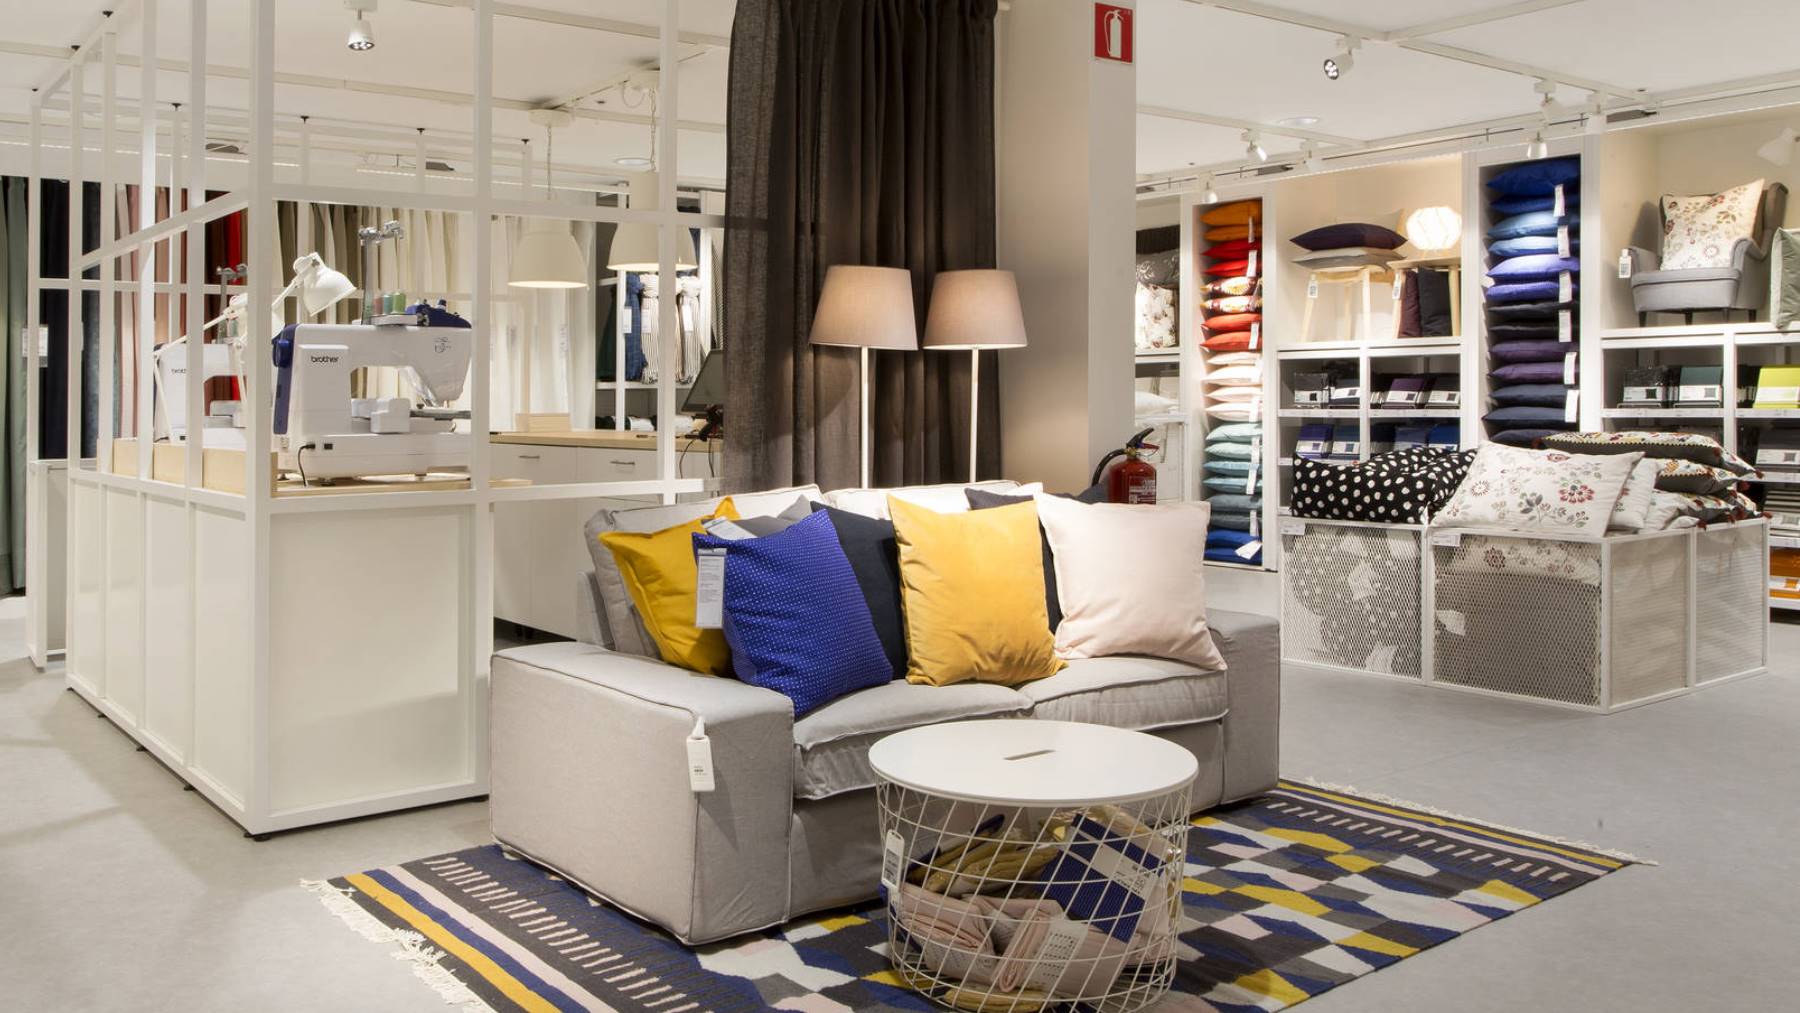 ¿Necesitas un armario bueno, bonito y barato? Esta es la mejor selección en Ikea